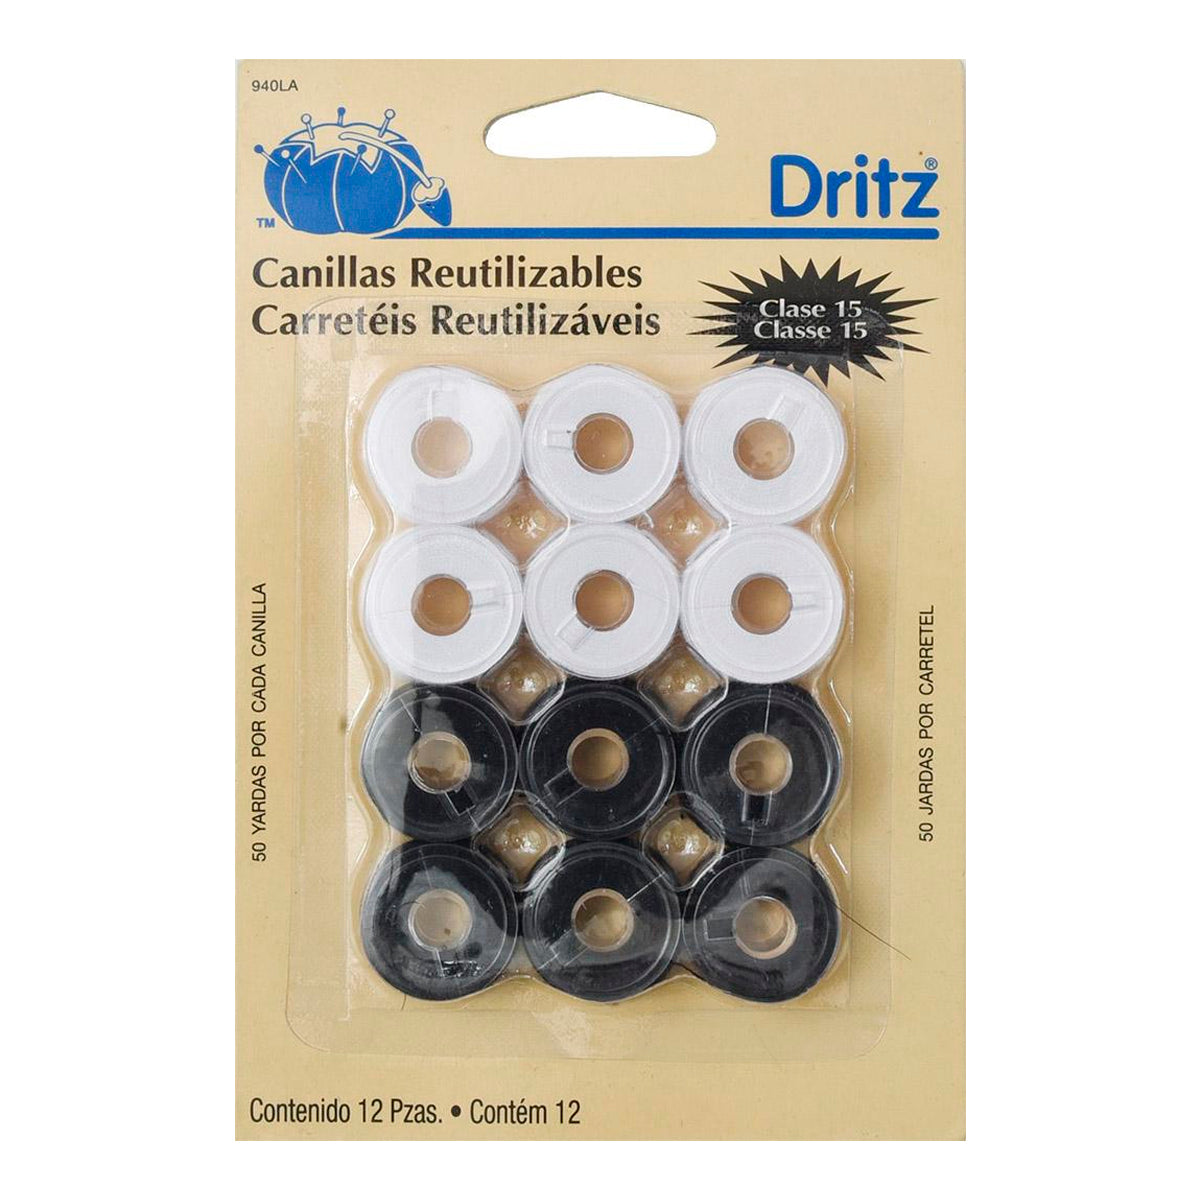 Carreteles Dritz Reutilizables 940